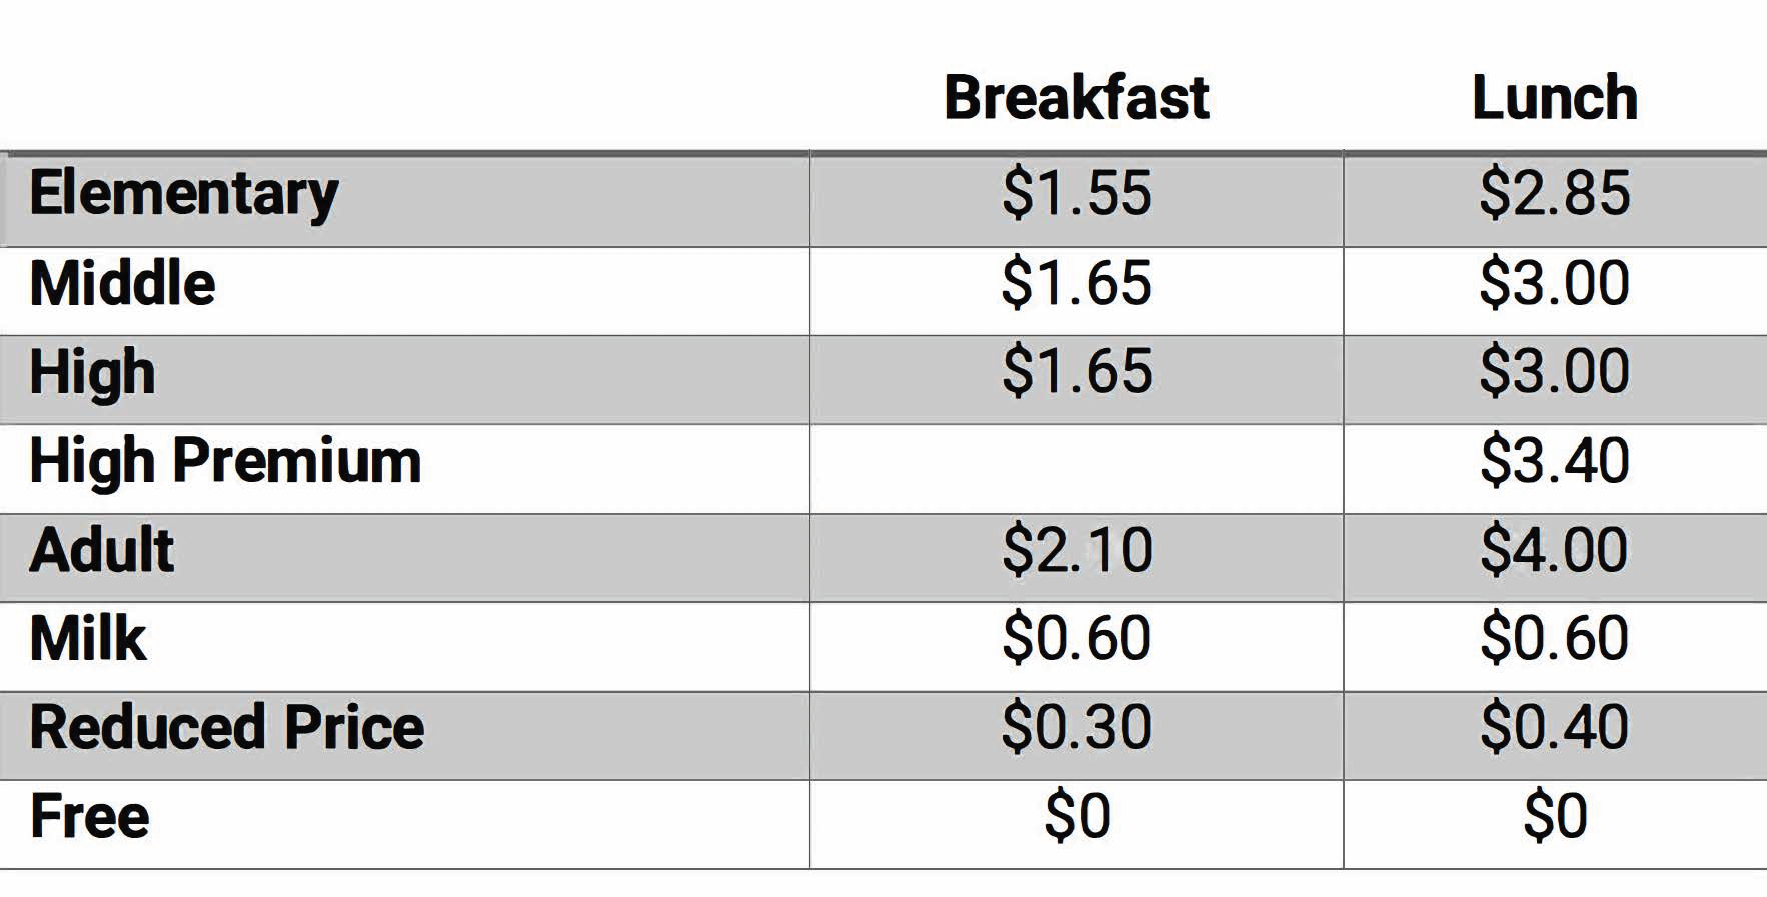 breakfast: ES $1.55, MS & HS $1.65, Adult $2. RP $0.30. Lunch: ES $2.85, MS & HS $3, HS premium $3.40, Adult $3.90, RP $0.40